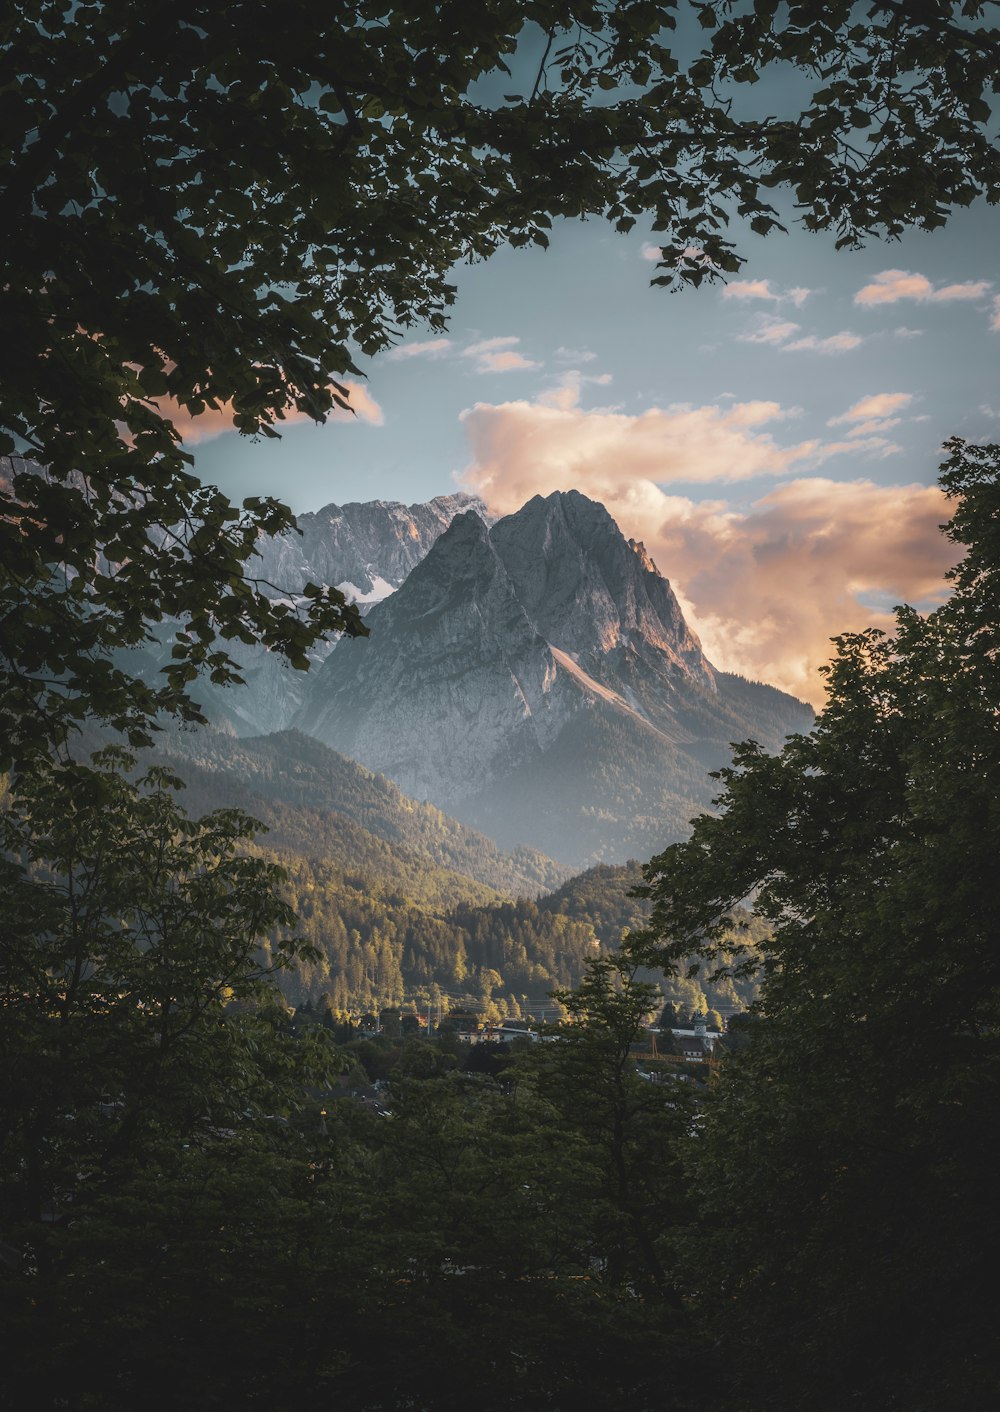 Una vista de una cadena montañosa desde un bosque